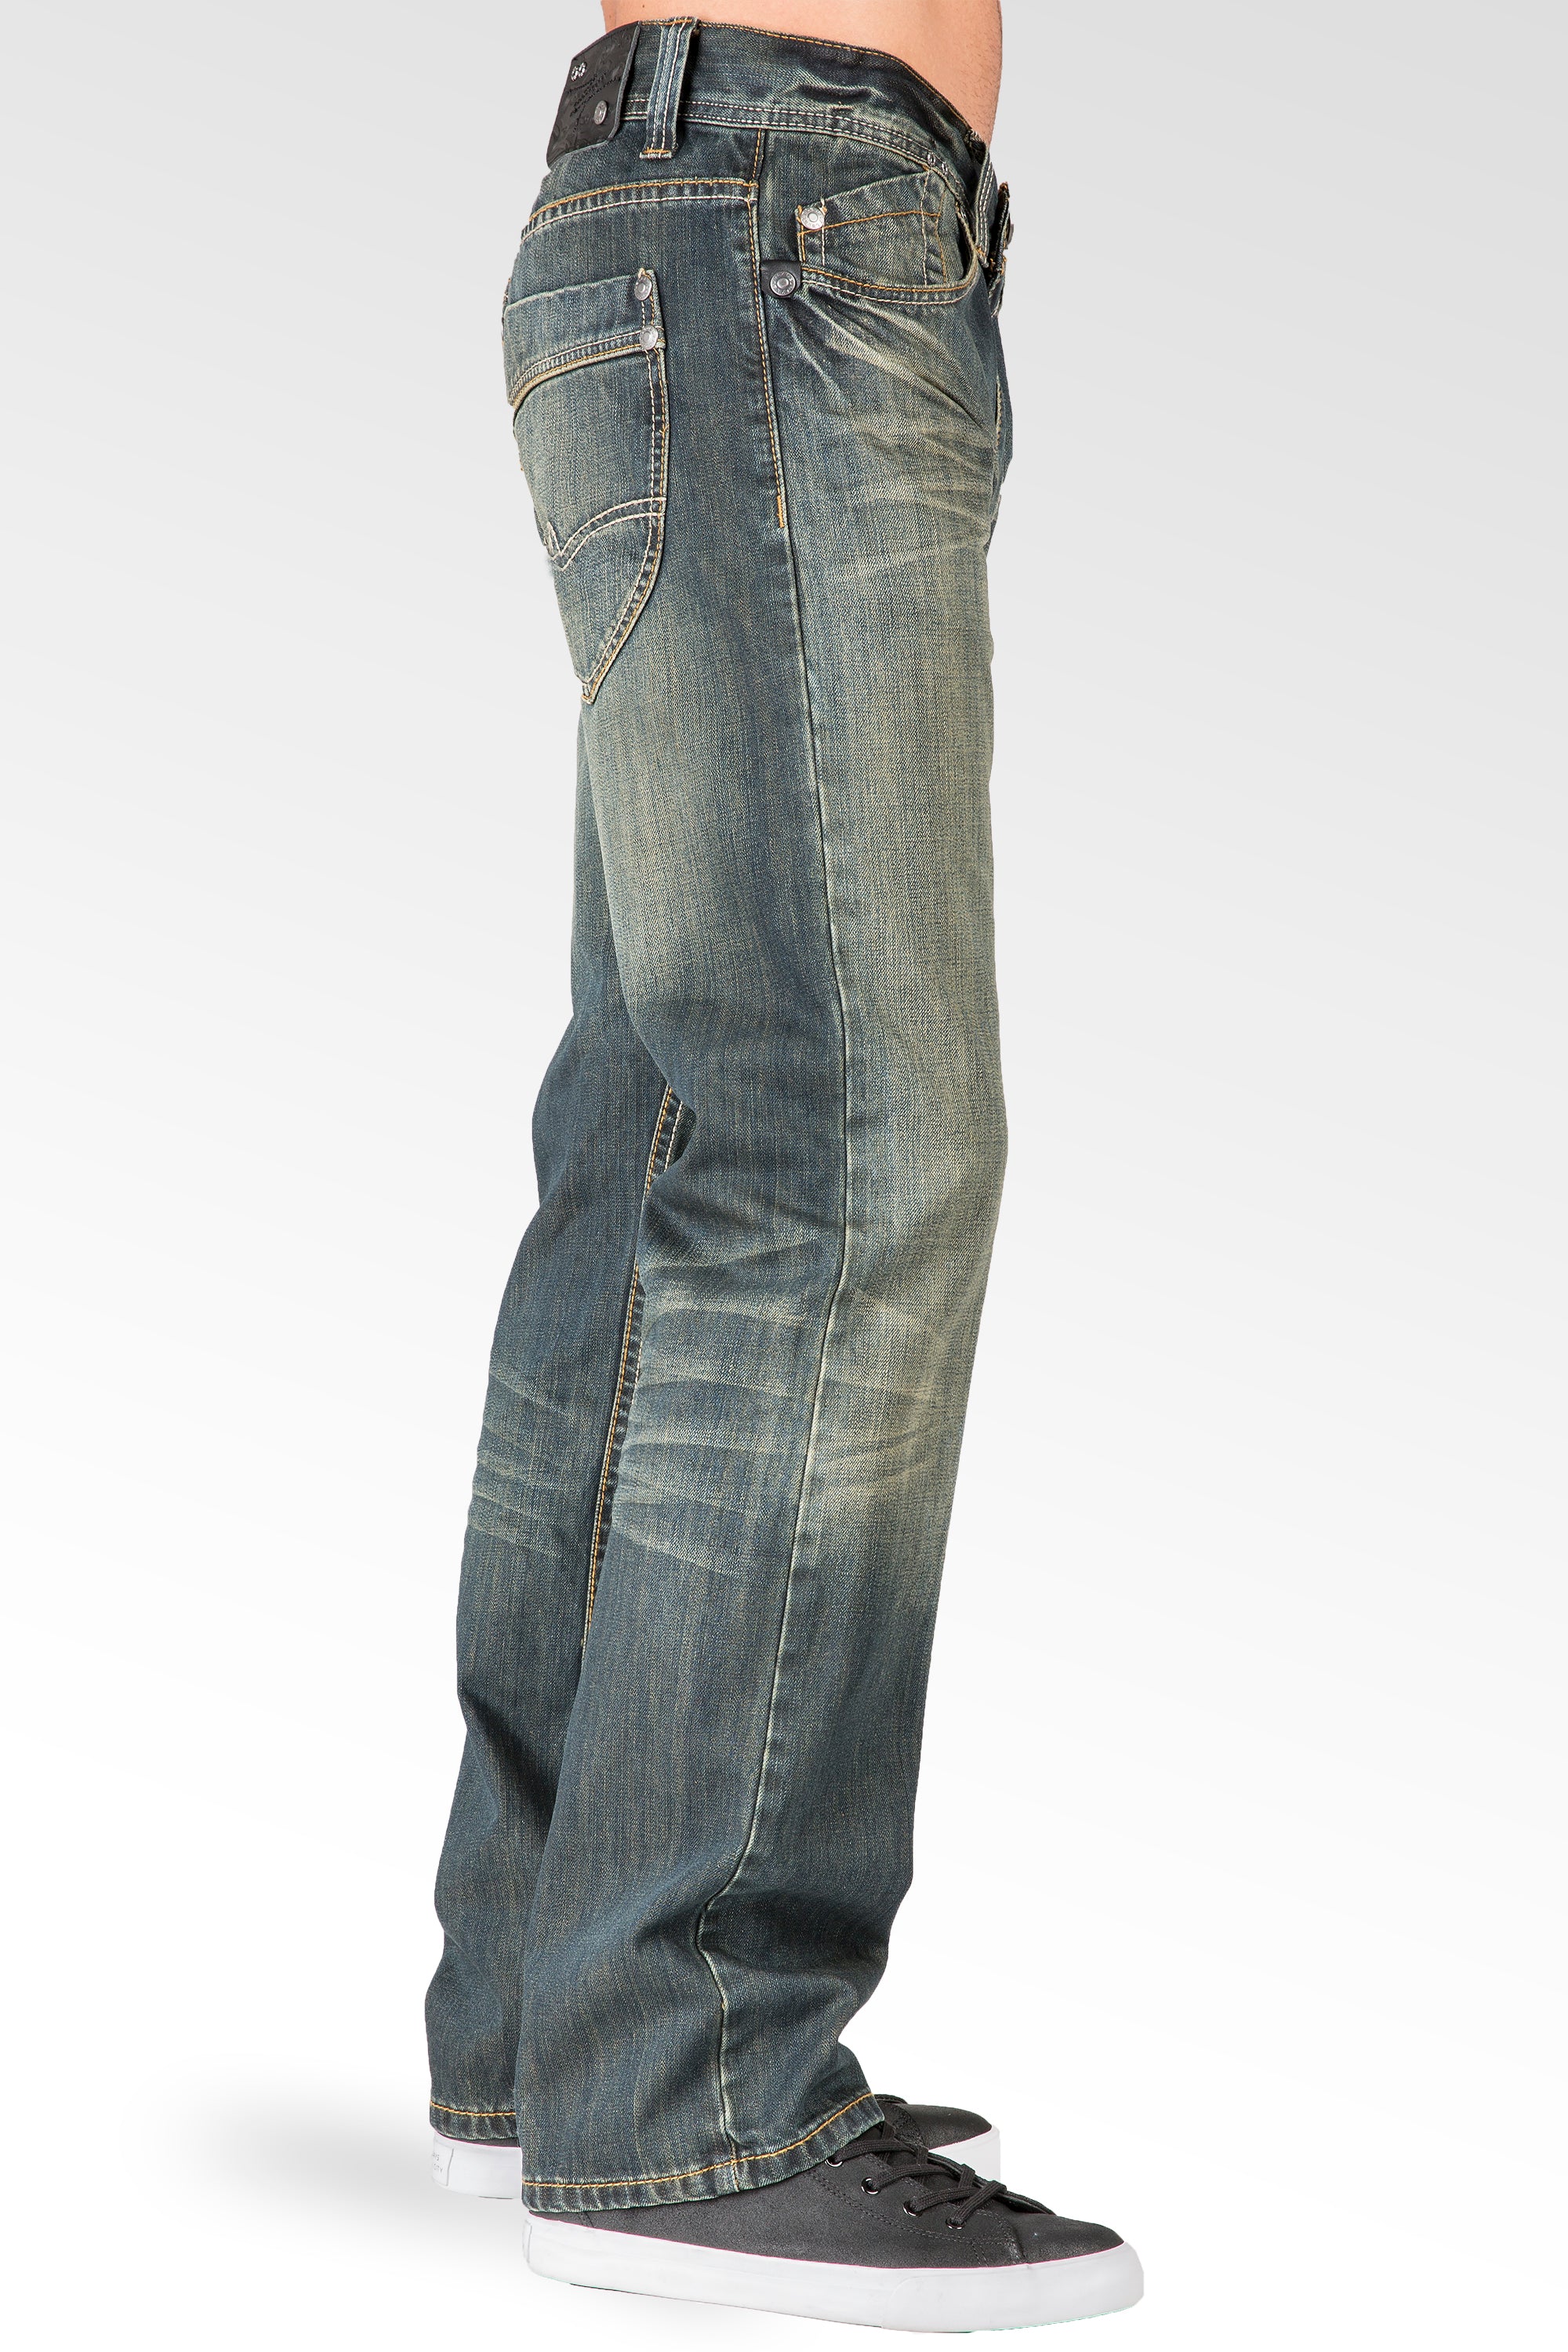 Contest fades | Vintage denim jeans, Denim jacket men, Mens outfits